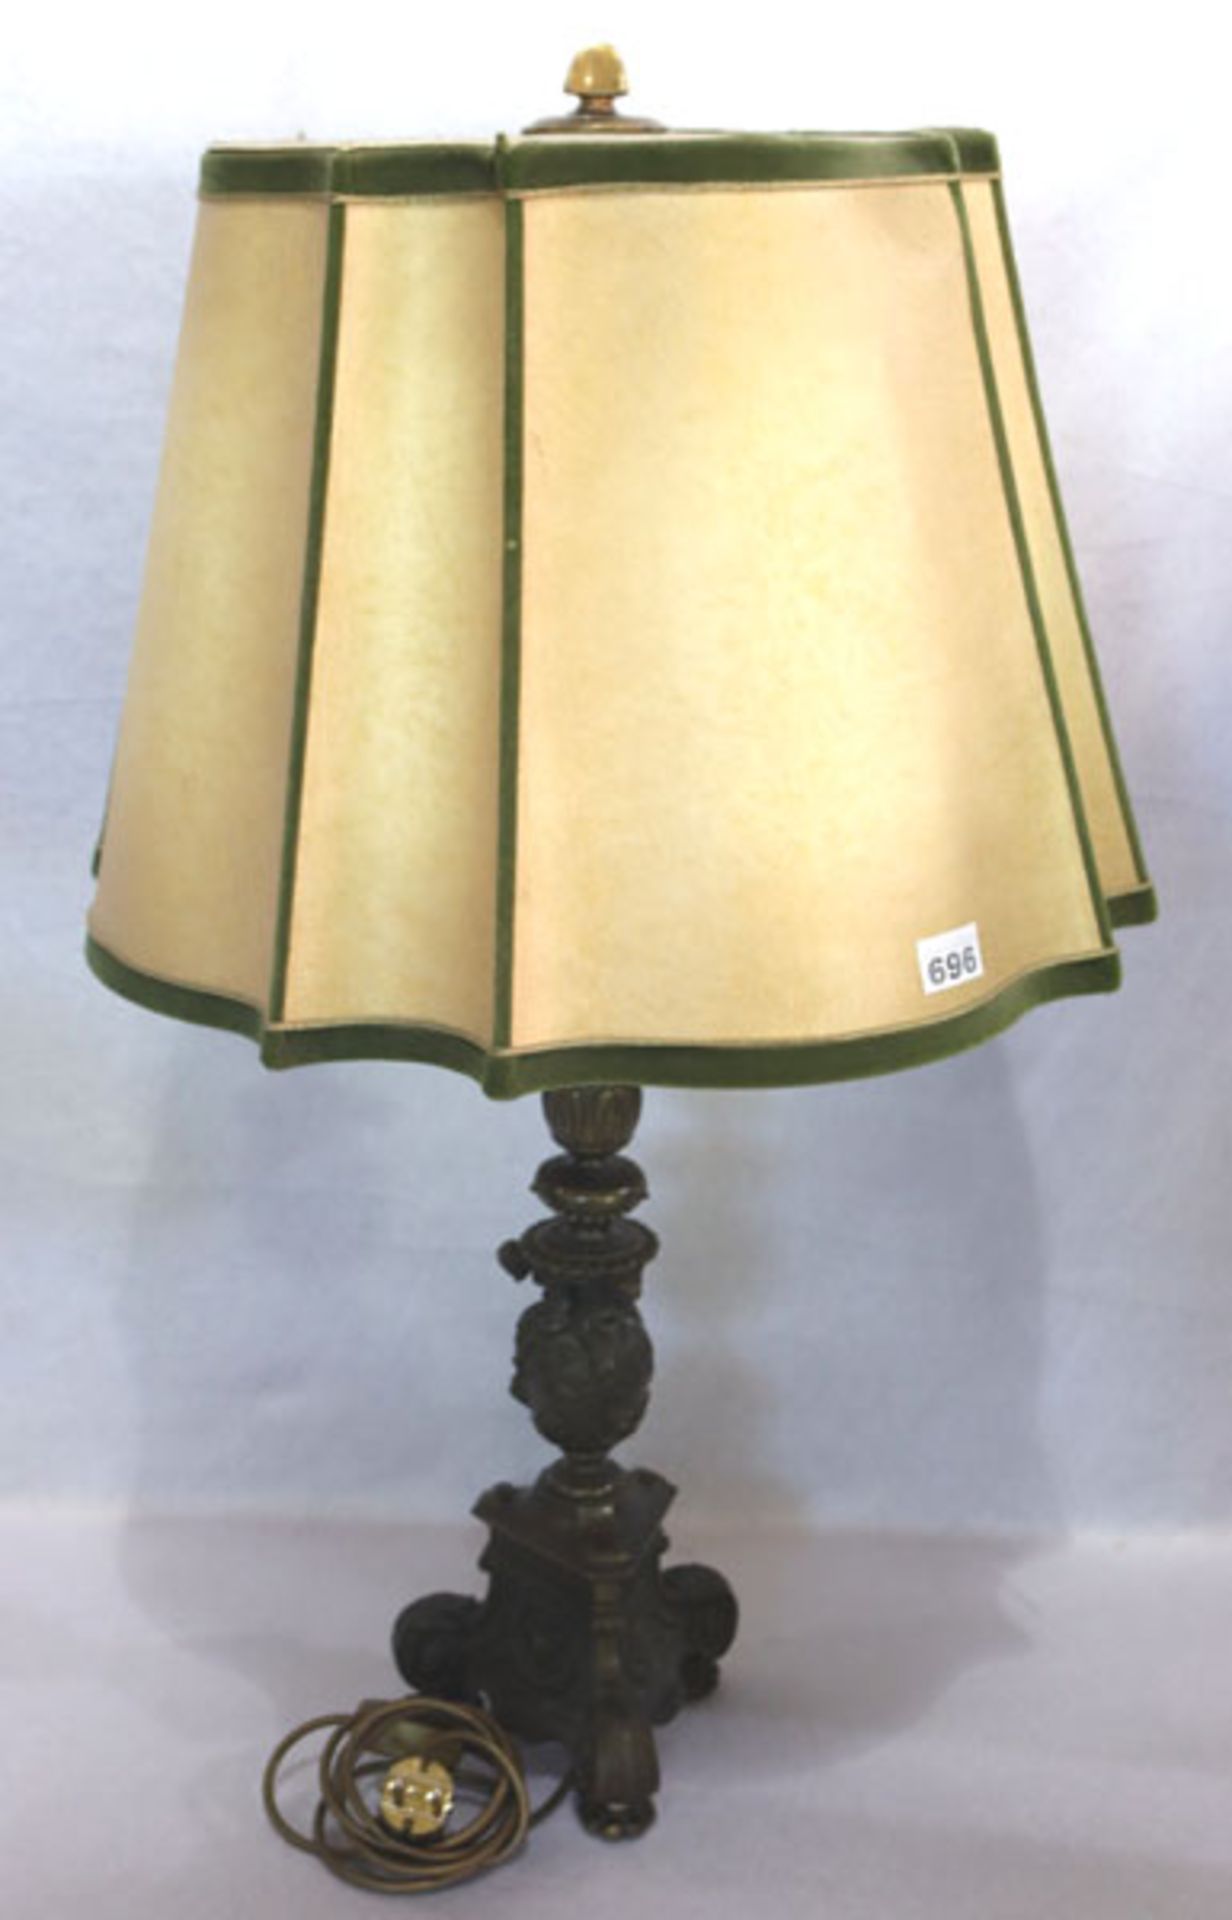 Tischlampe mit reliefiertem Lampenfuß, Bronze ?, mit beige/grünem Schirm, H 86 cm, D 48 cm, teils